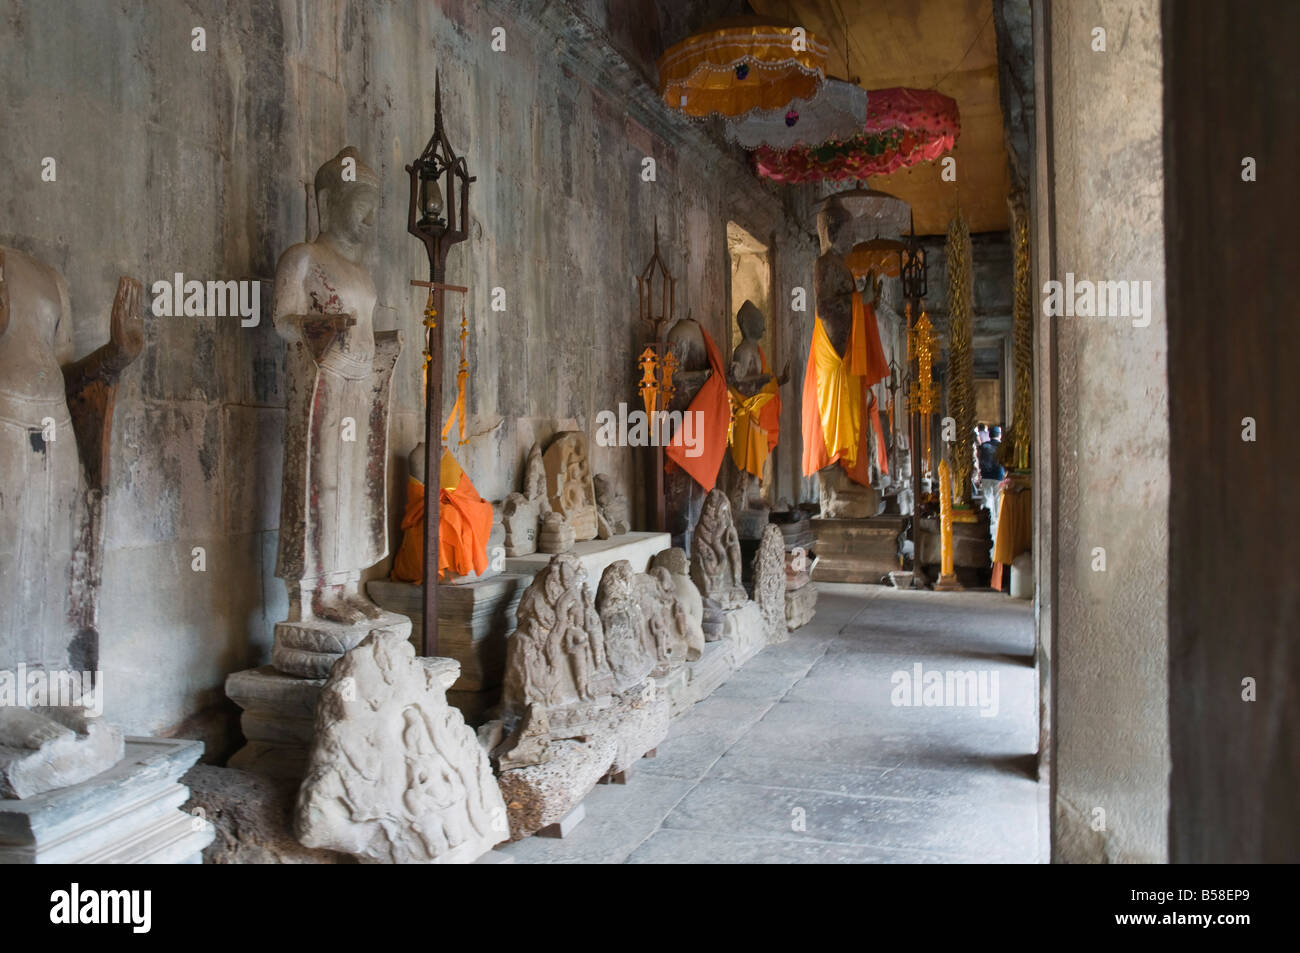 Angkor Wat temple, 12e siècle, khmers, Angkor, Site du patrimoine mondial de l'UNESCO, Siem Reap, Cambodge, Indochine, Asie du sud-est Banque D'Images